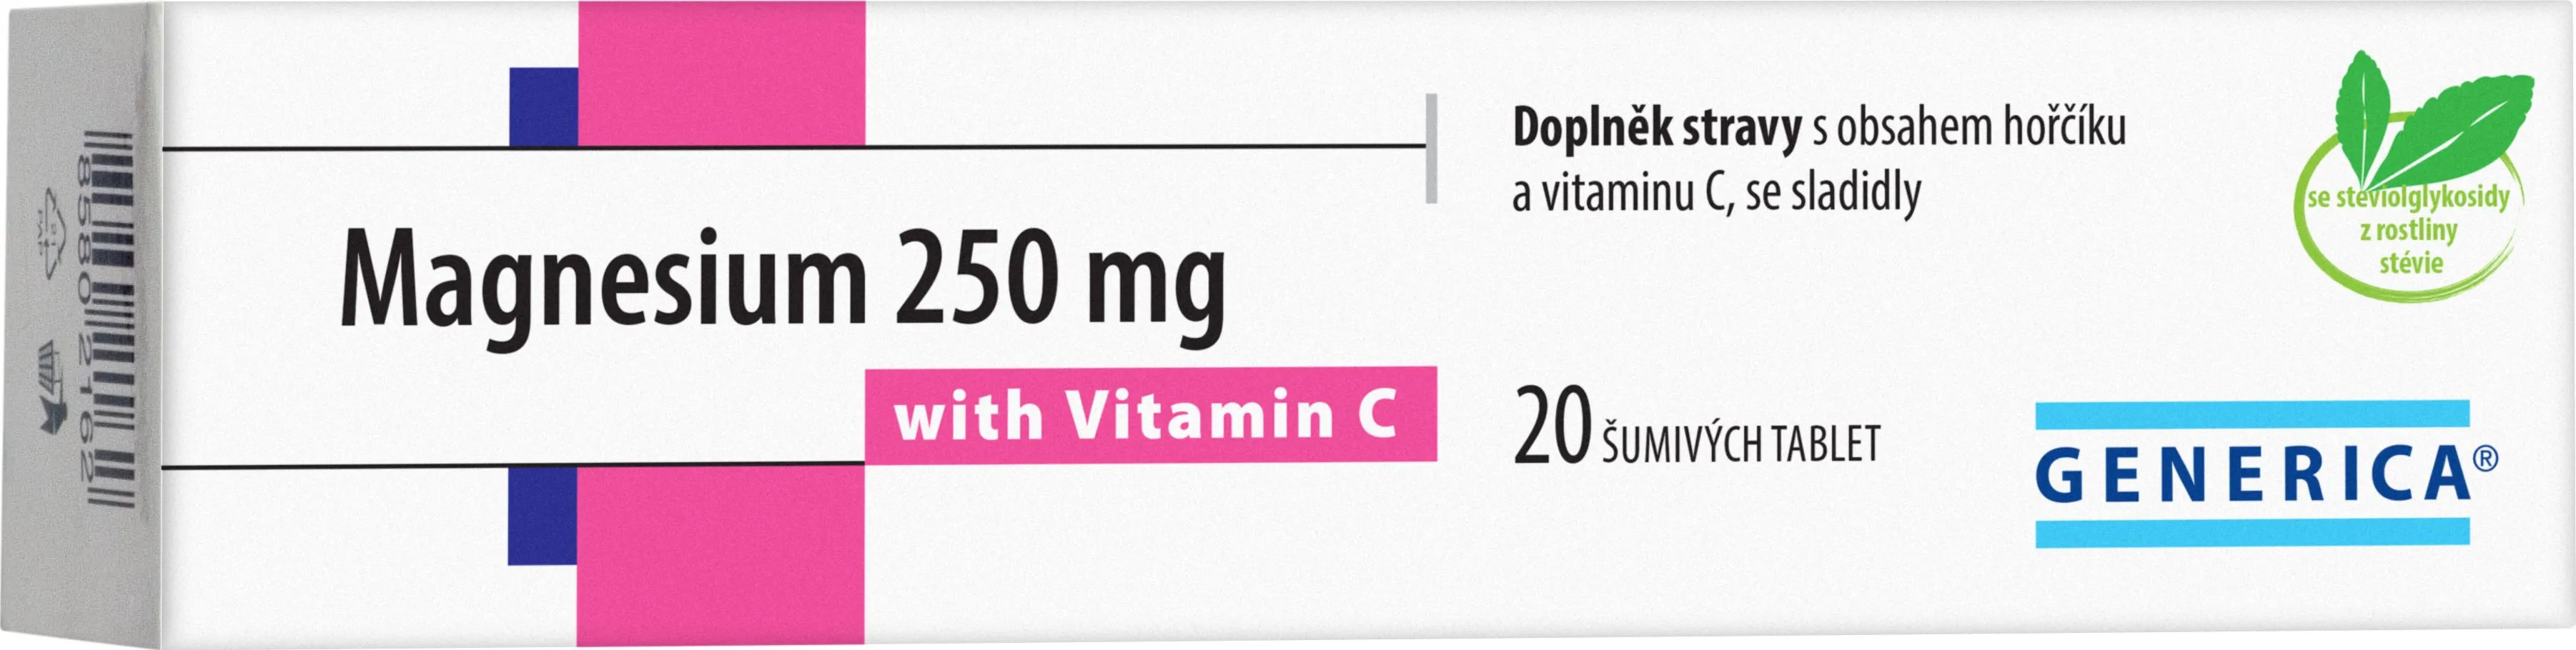 Generica Magnesium 250 mg s vitaminem C